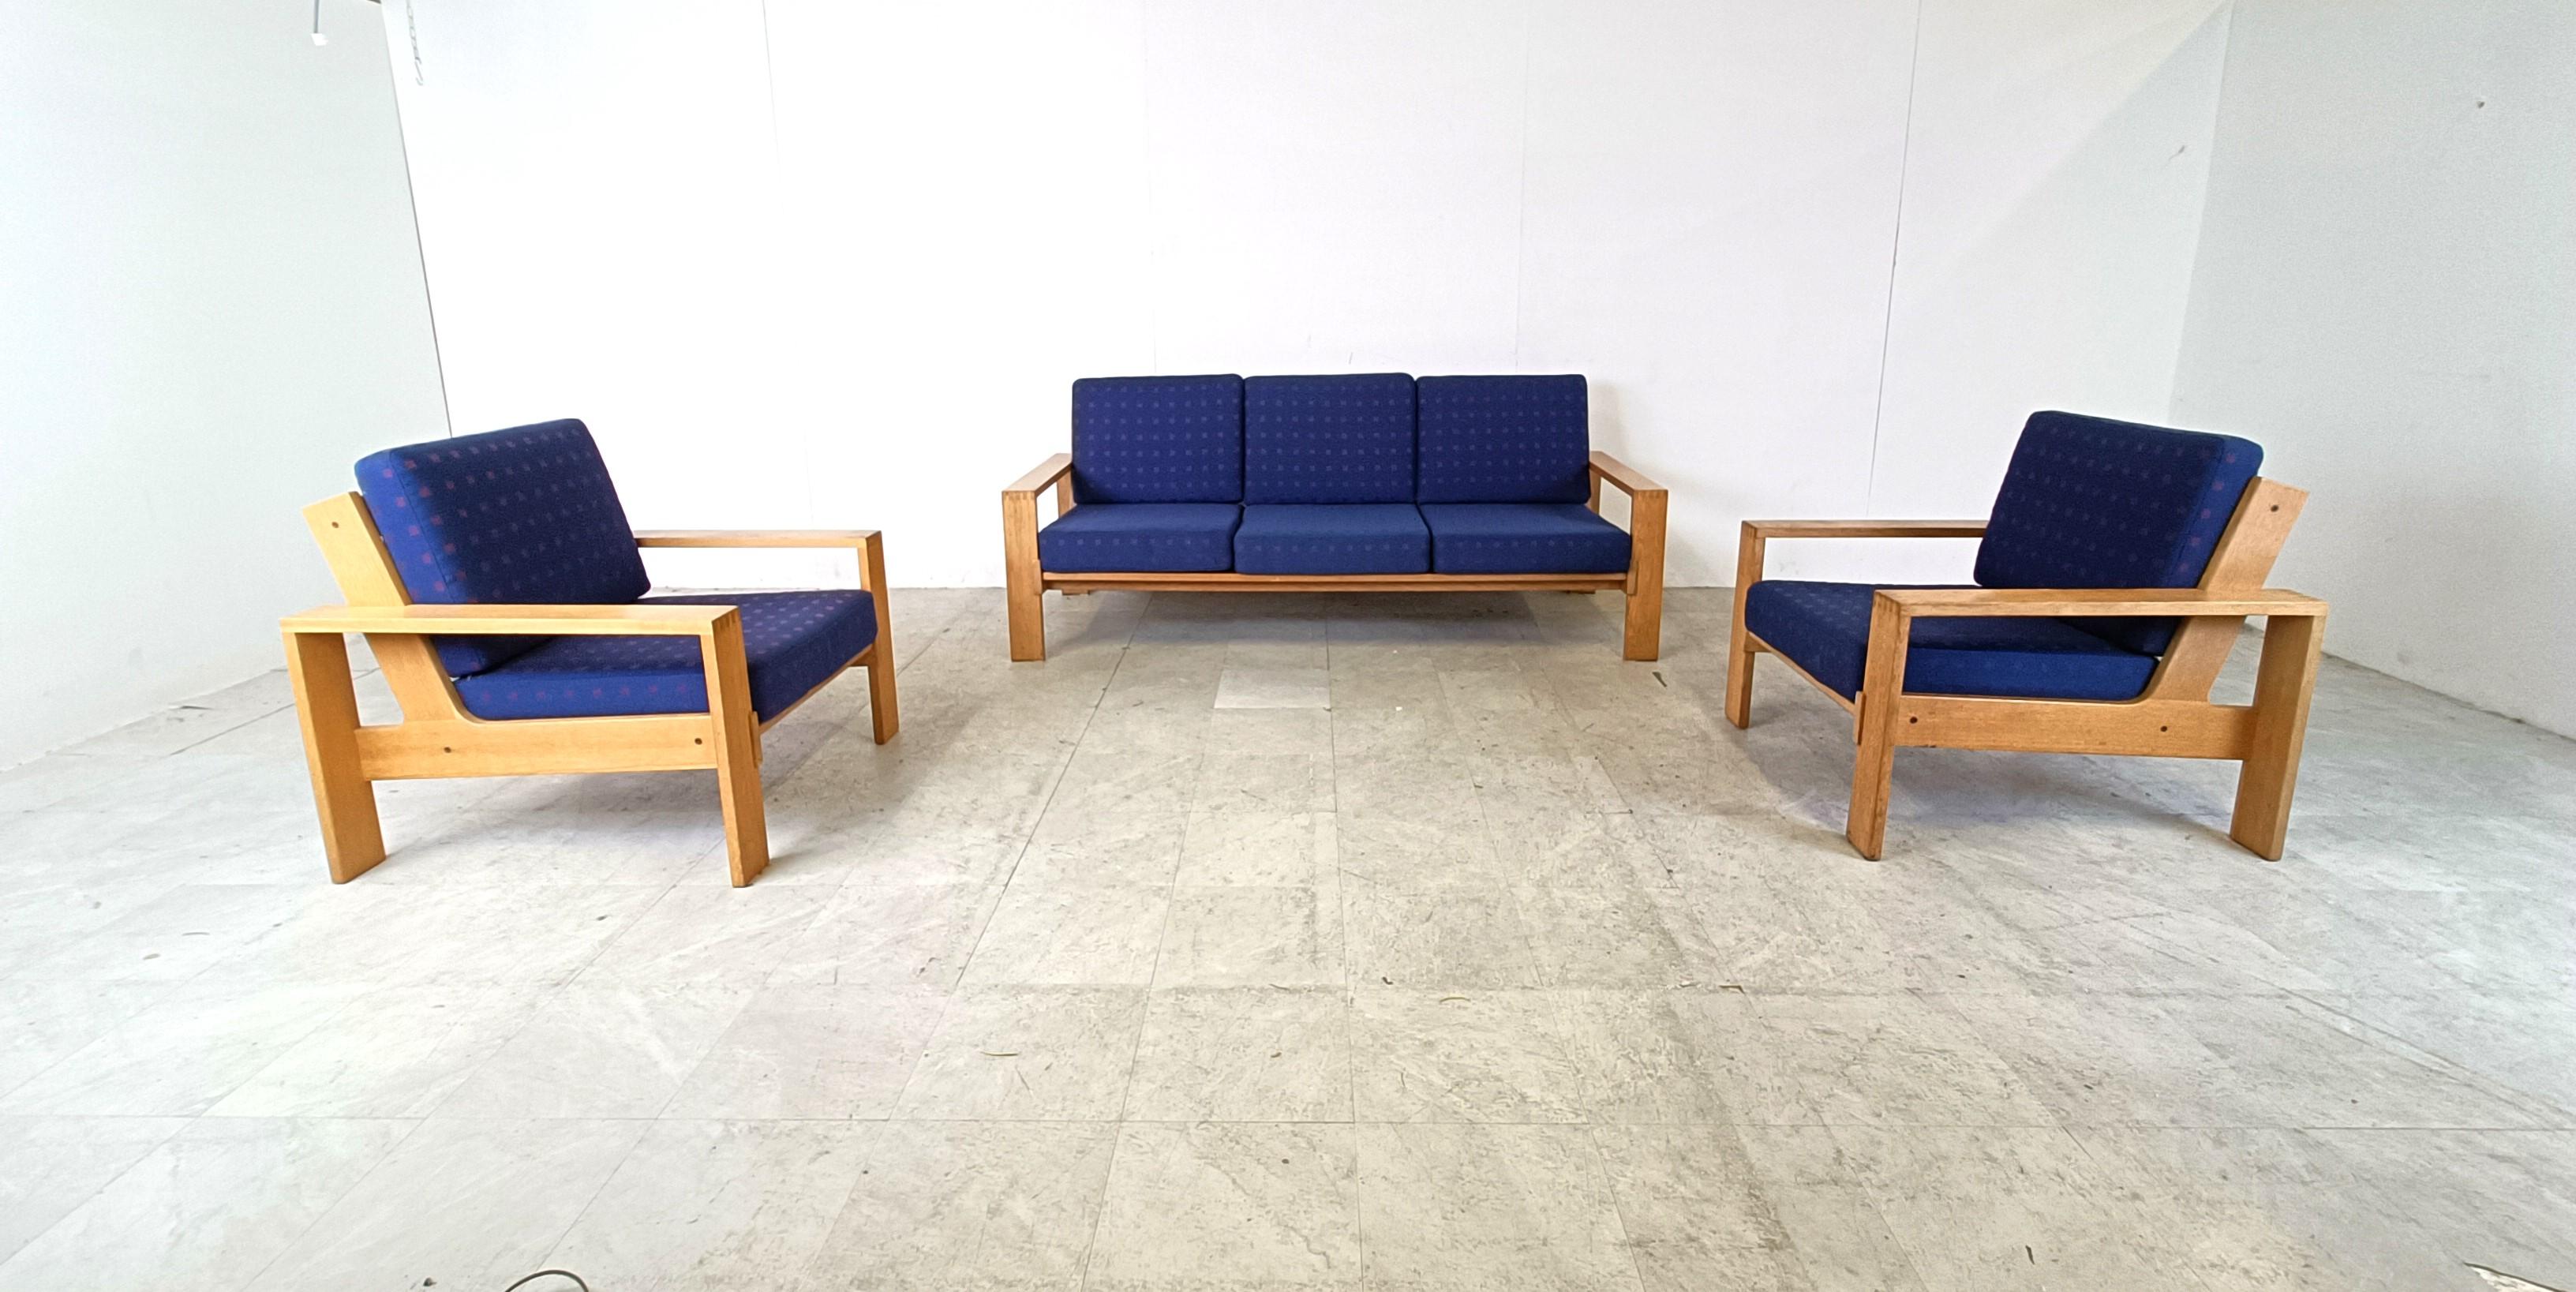 Sofagarnitur im Vintage-Stil, bestehend aus zwei Sesseln und einem dreisitzigen Sofa.

Das Design ähnelt den Asko 'Bonanza' Sofas mit ineinander greifenden Holzrahmen.

Die Sofas haben ihre originalen blauen Stoffkissen. 

Sehr guter Zustand

1970er